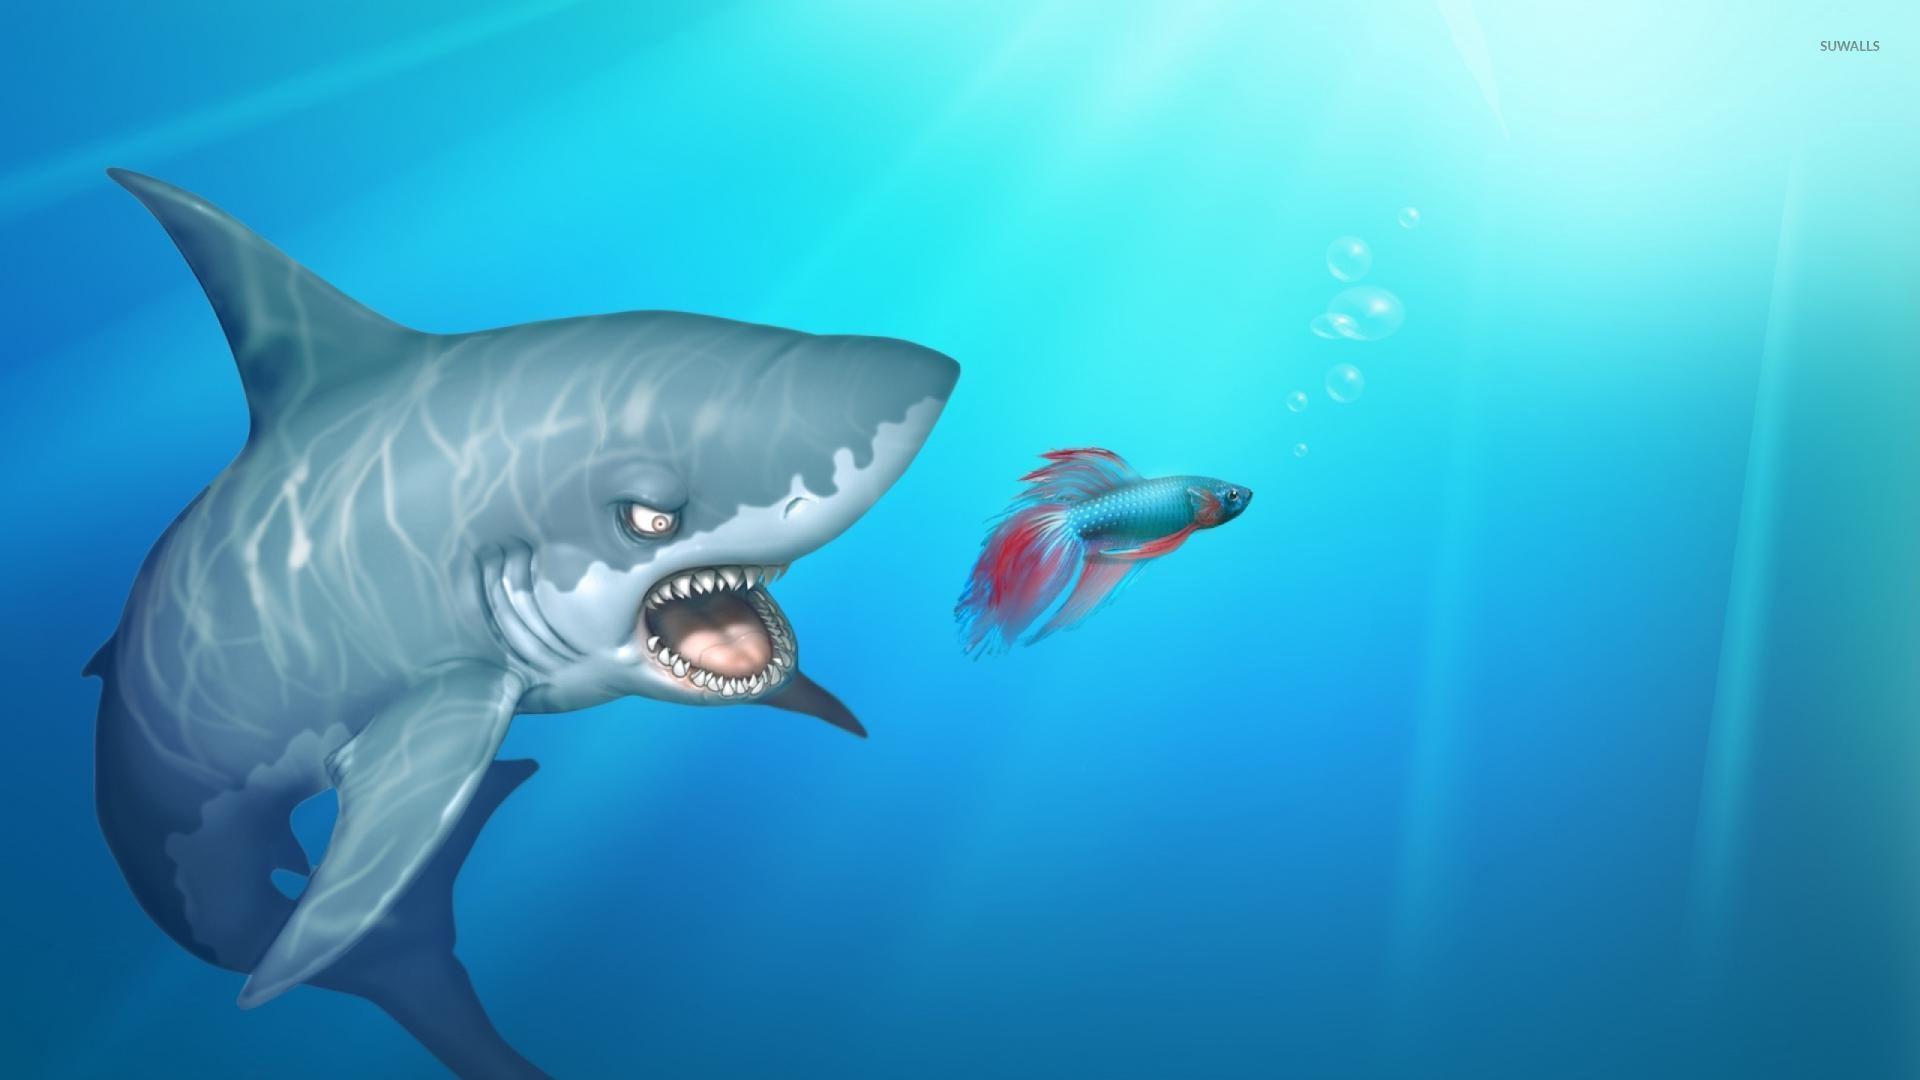 Shark after the fish wallpaper Art wallpaper